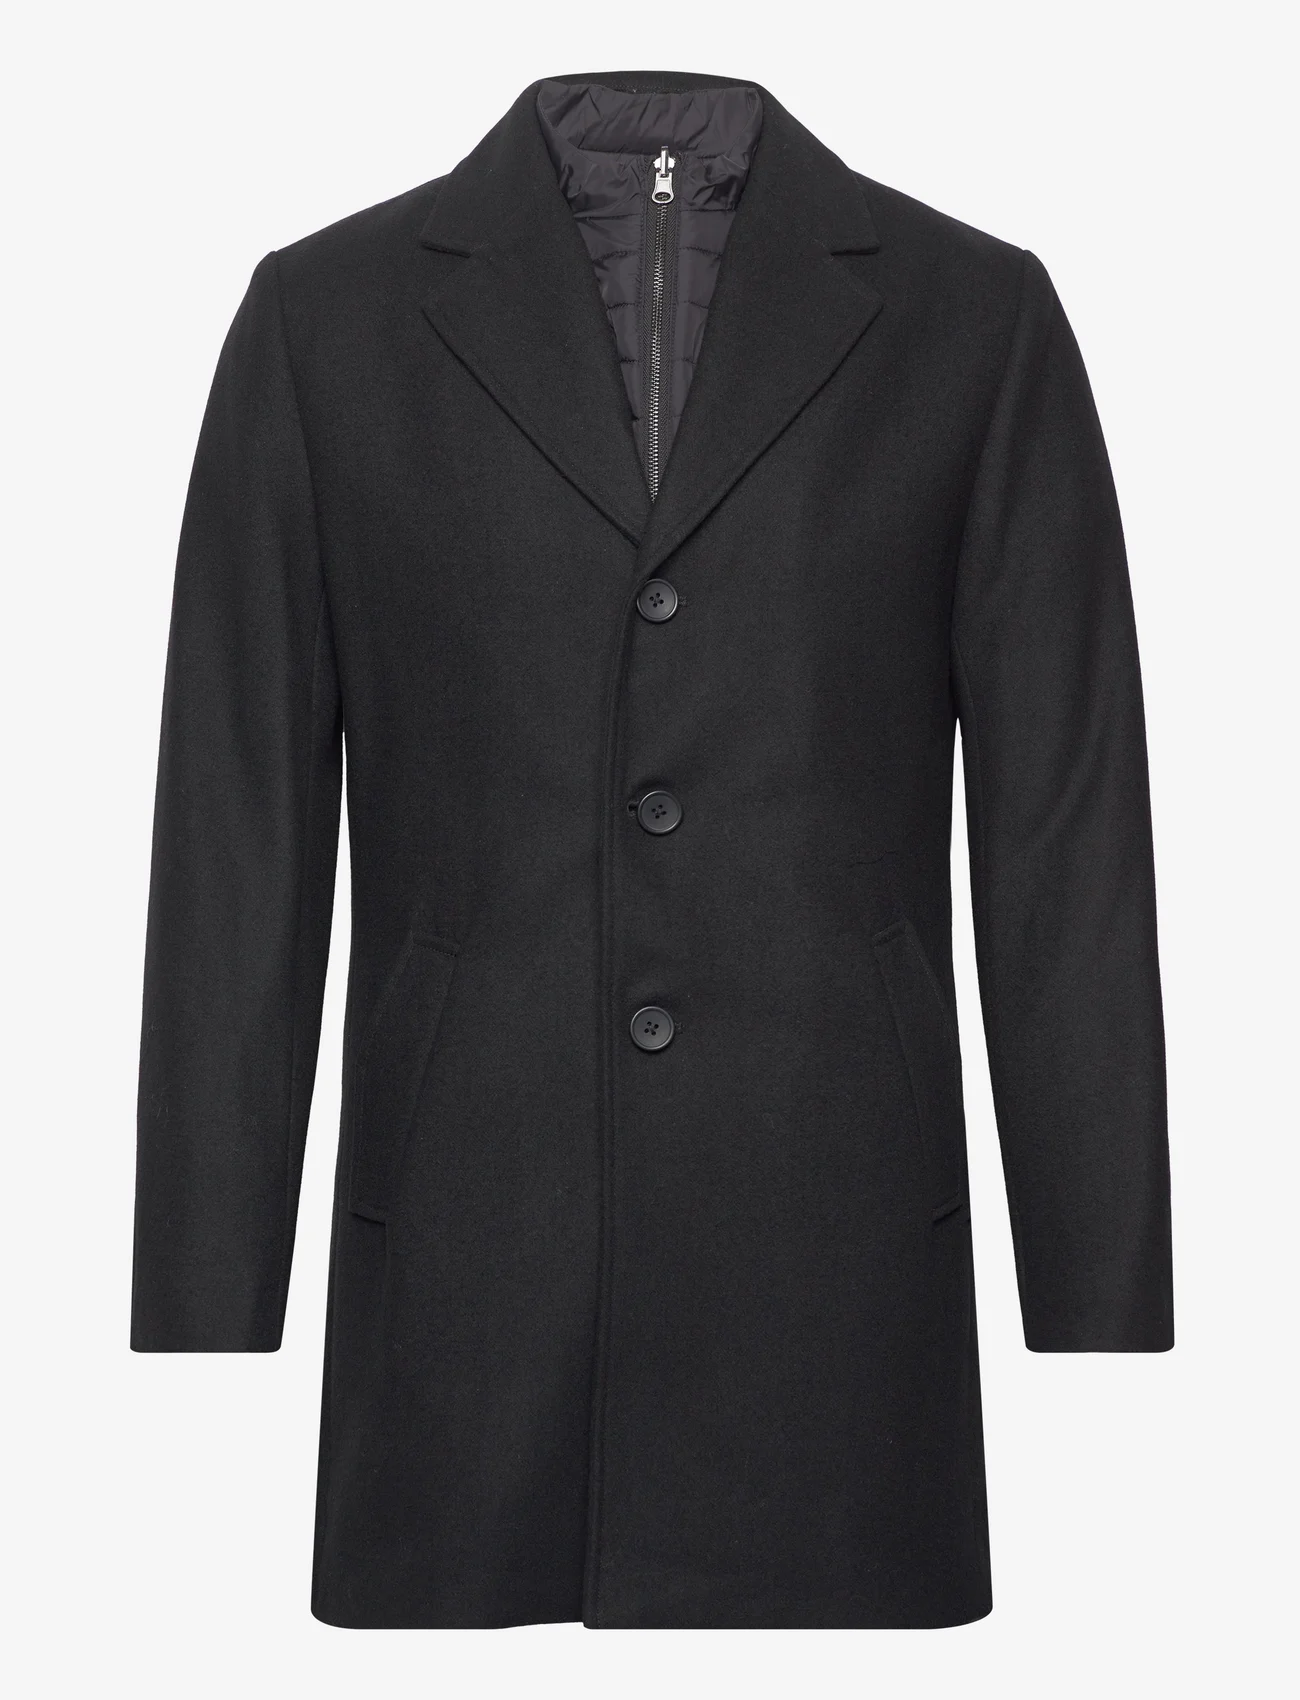 Bruun & Stengade - BS Kingston Slim Fit Coat - winter jackets - black - 0